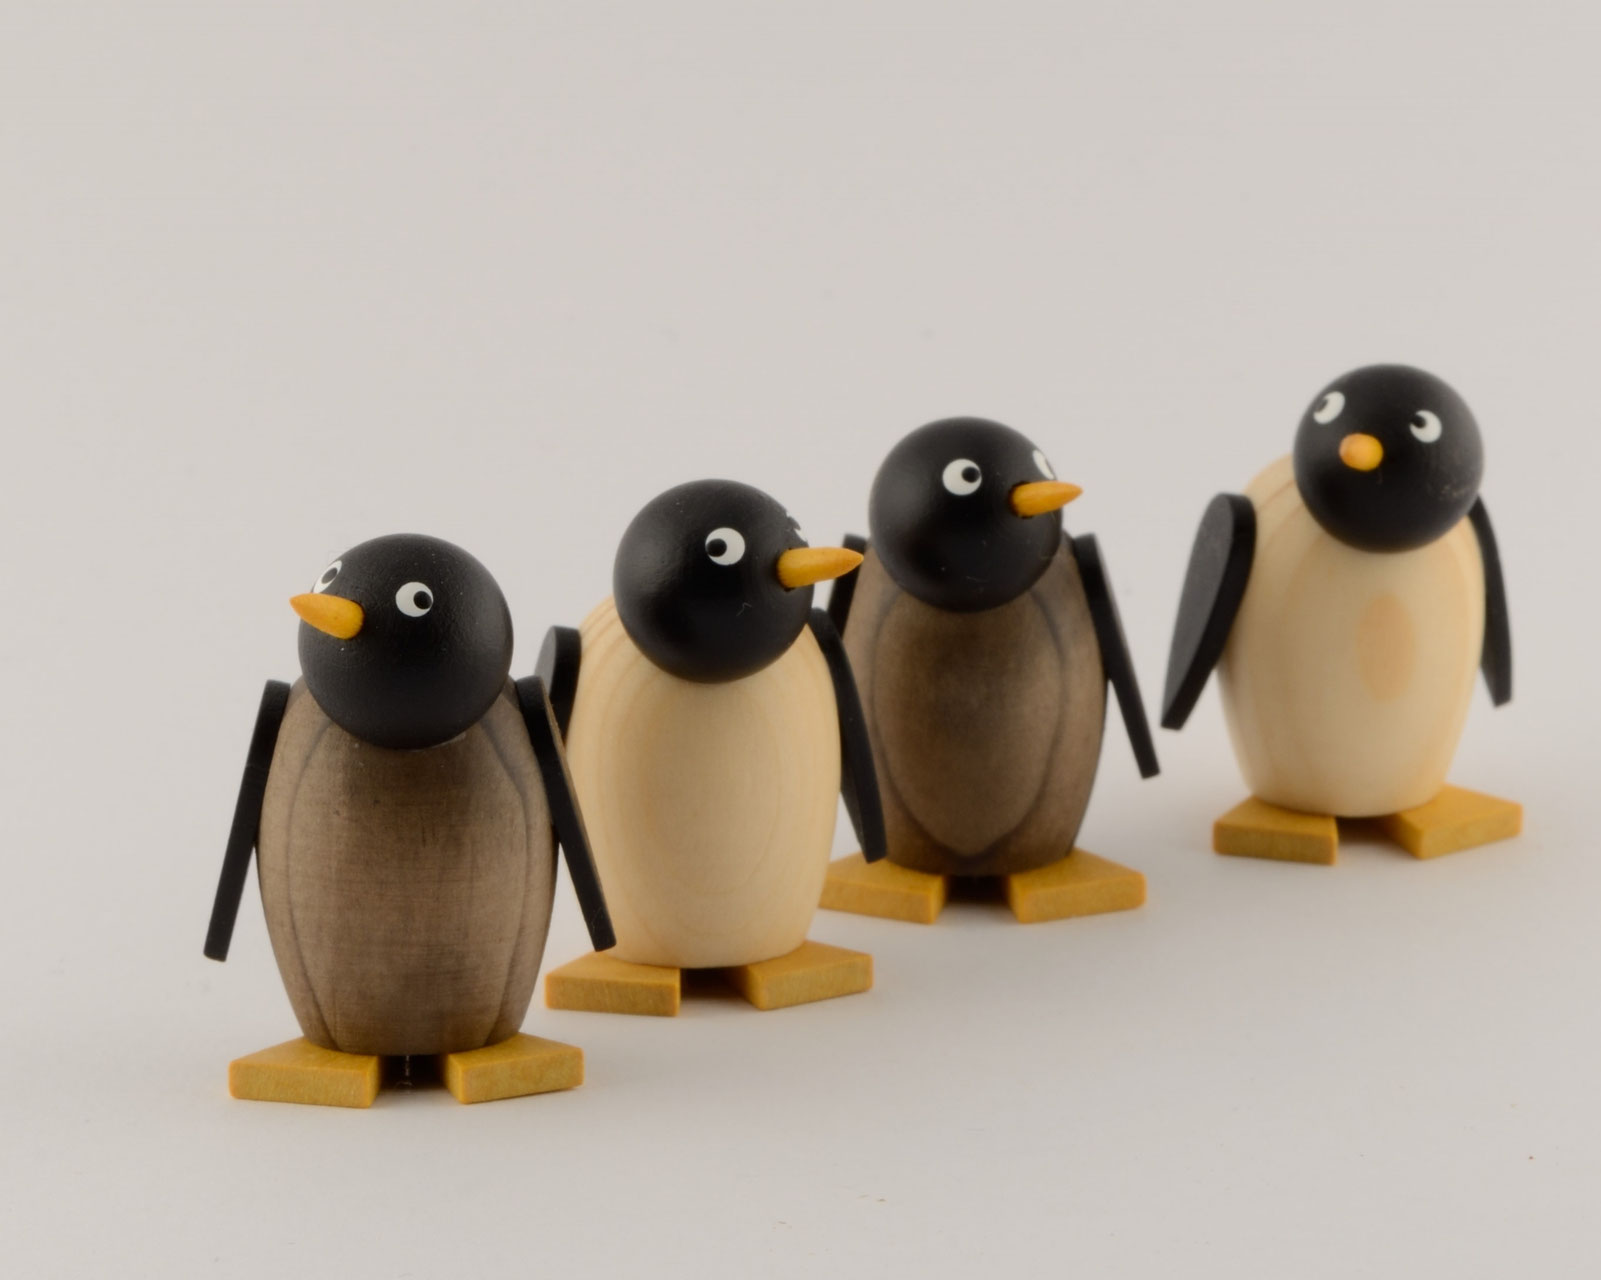 Pinguinbaby